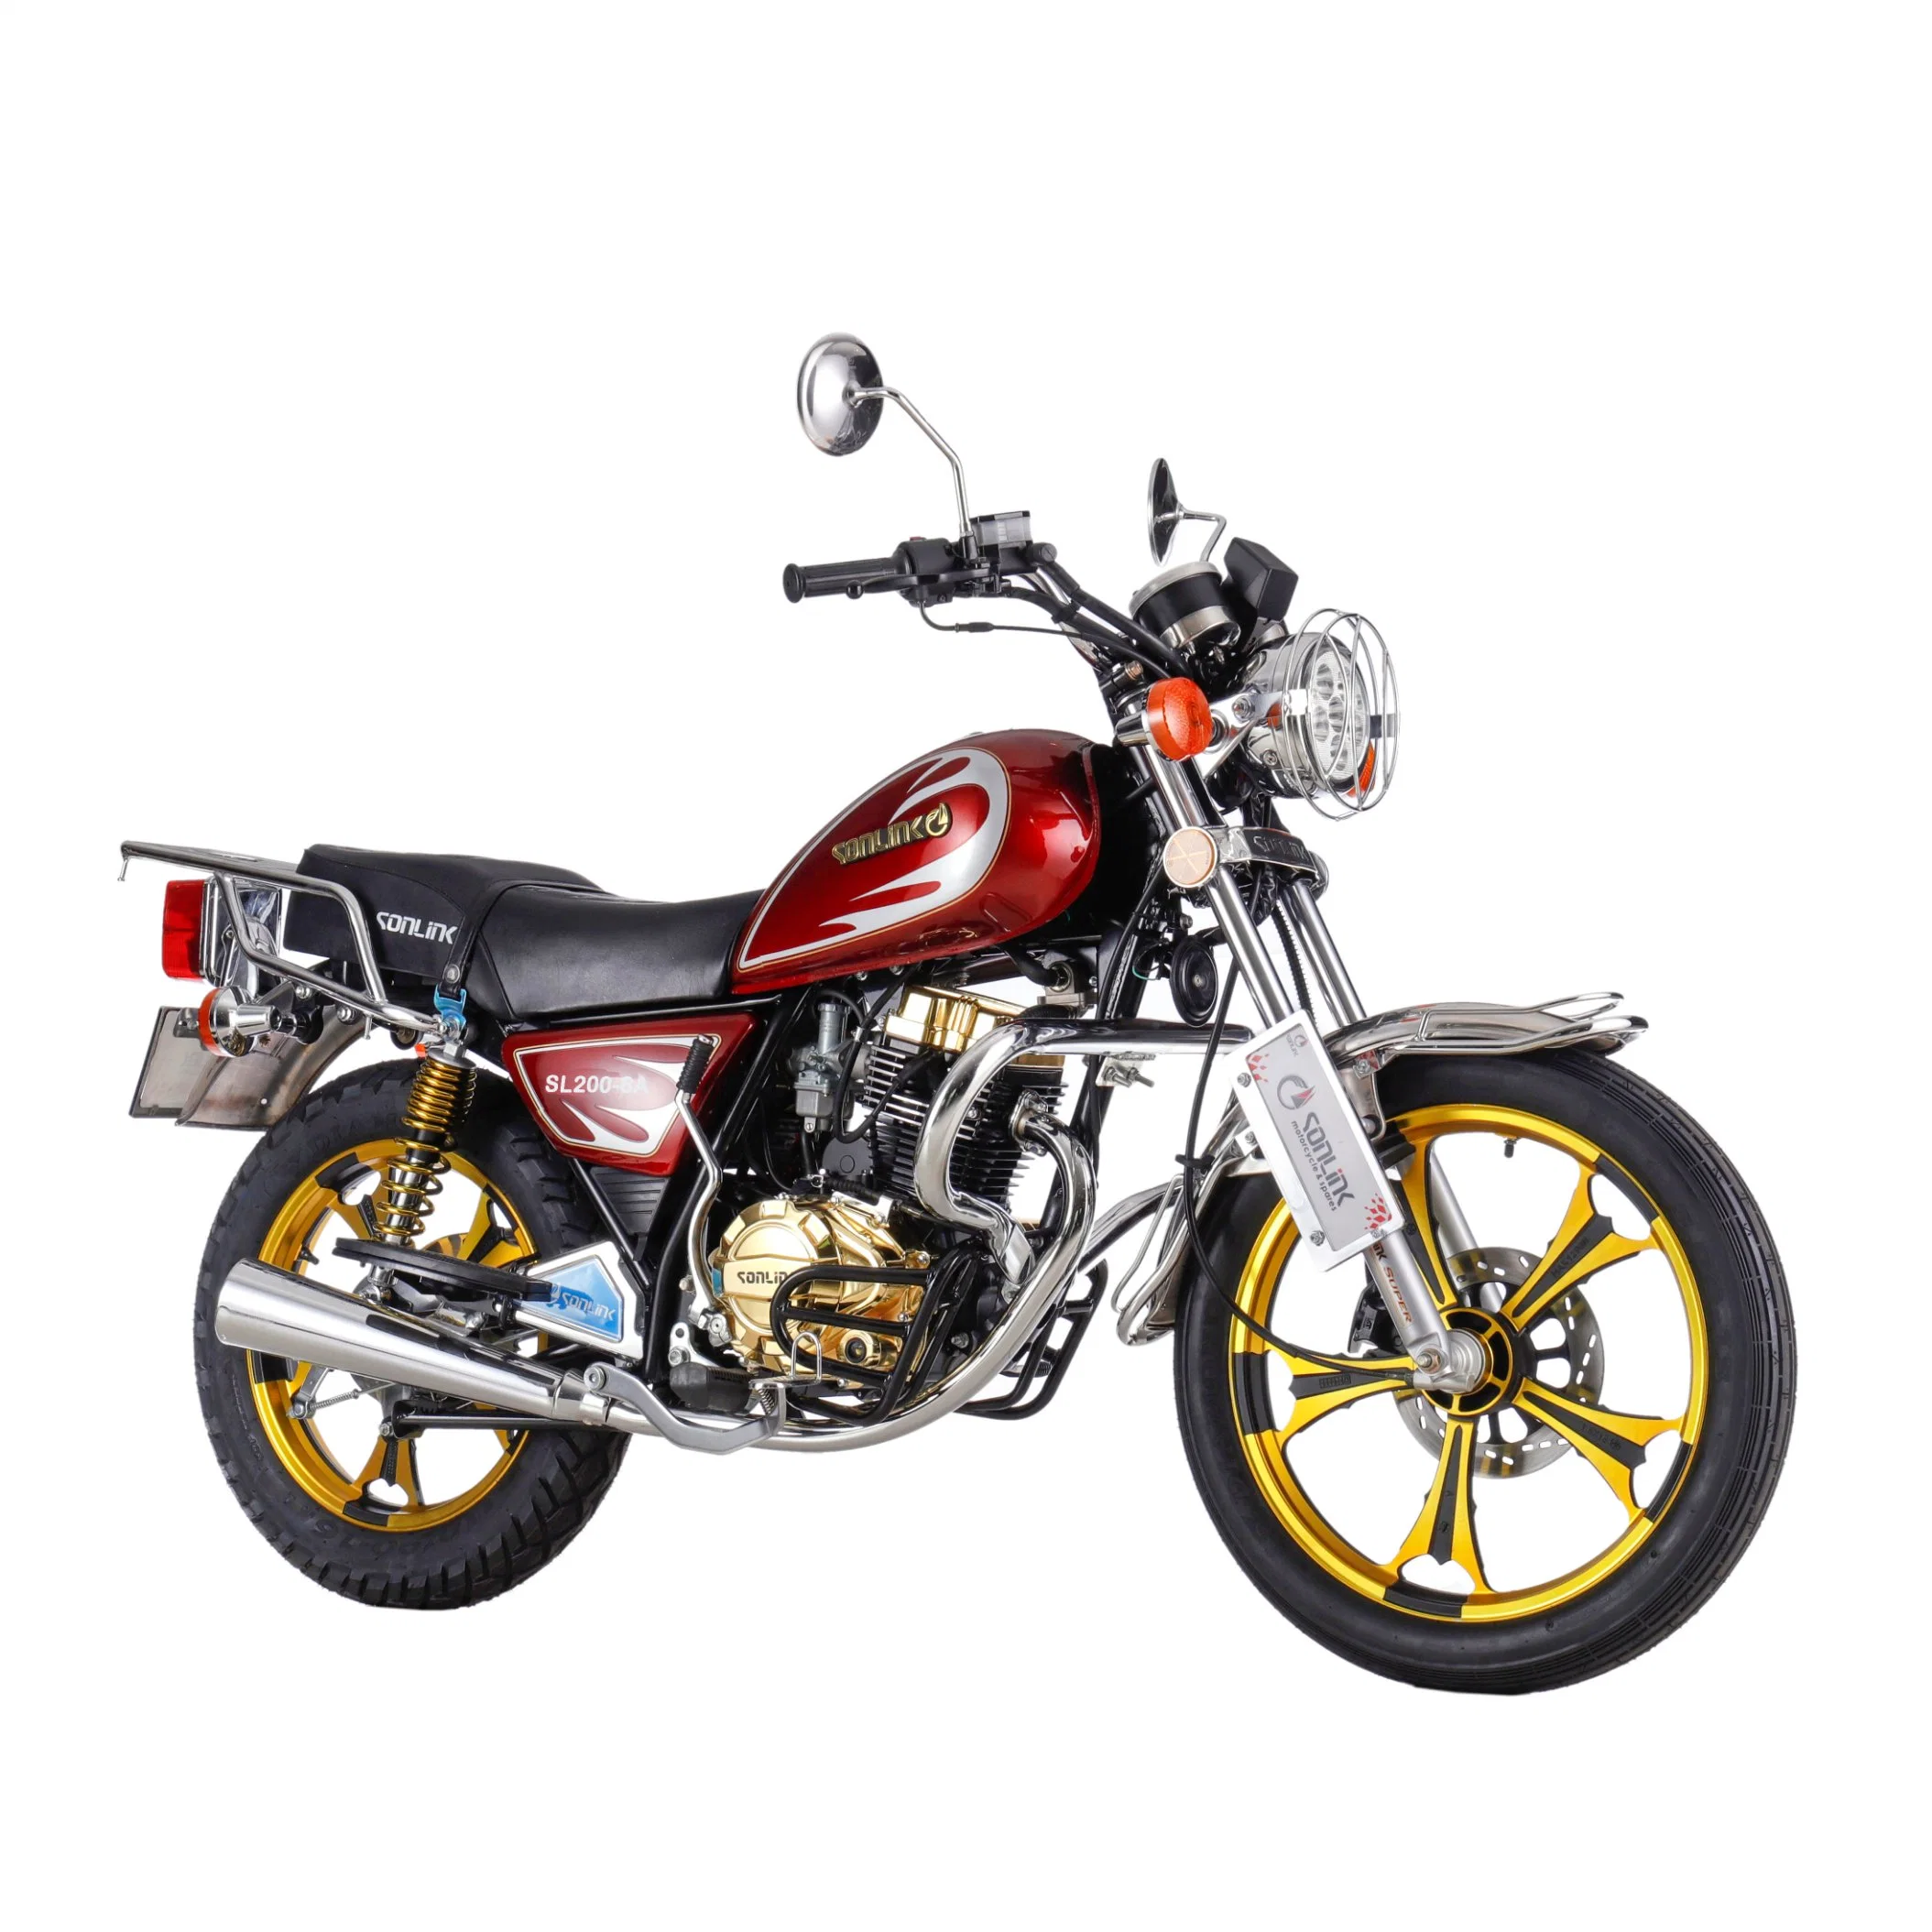 Las carreras de Suzuki 125cc/150cc/200 cc Gn/GN125 Cg Steet Irán Deporte Bajaj Boxer Moto televisores/Motor ciclo o Dirt Bike/Moto Precio de Yemen (SL) Un200-8